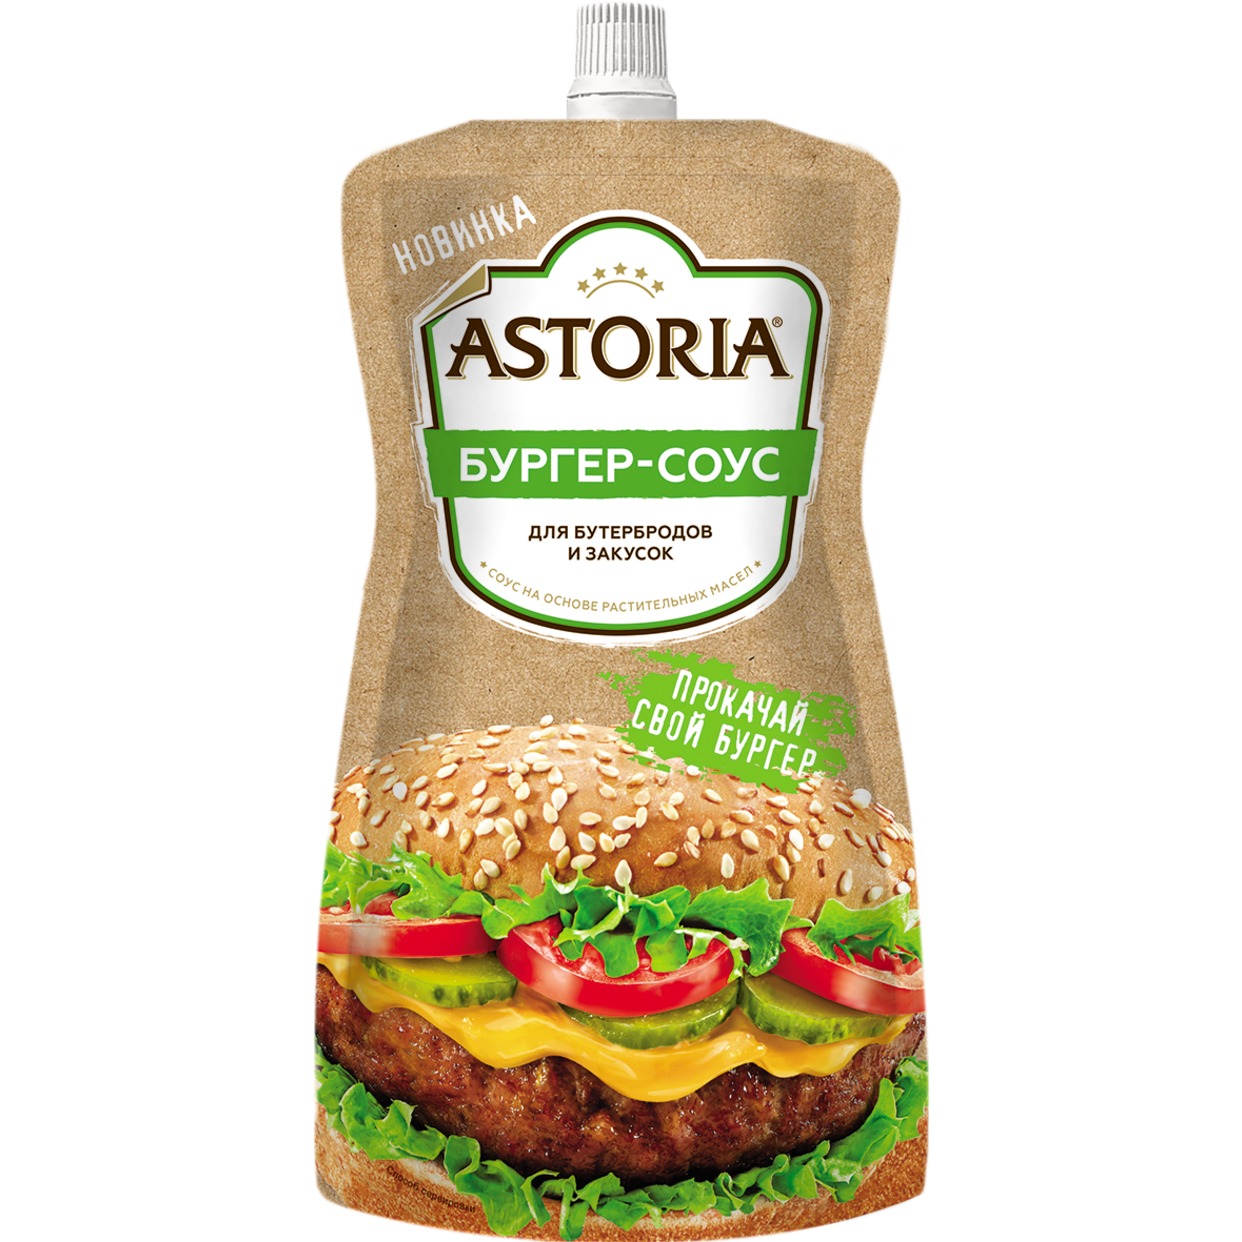 Астория™ Соус на основе растительных масел "Бургер-соус", 30% 200г ДПД по акции в Пятерочке